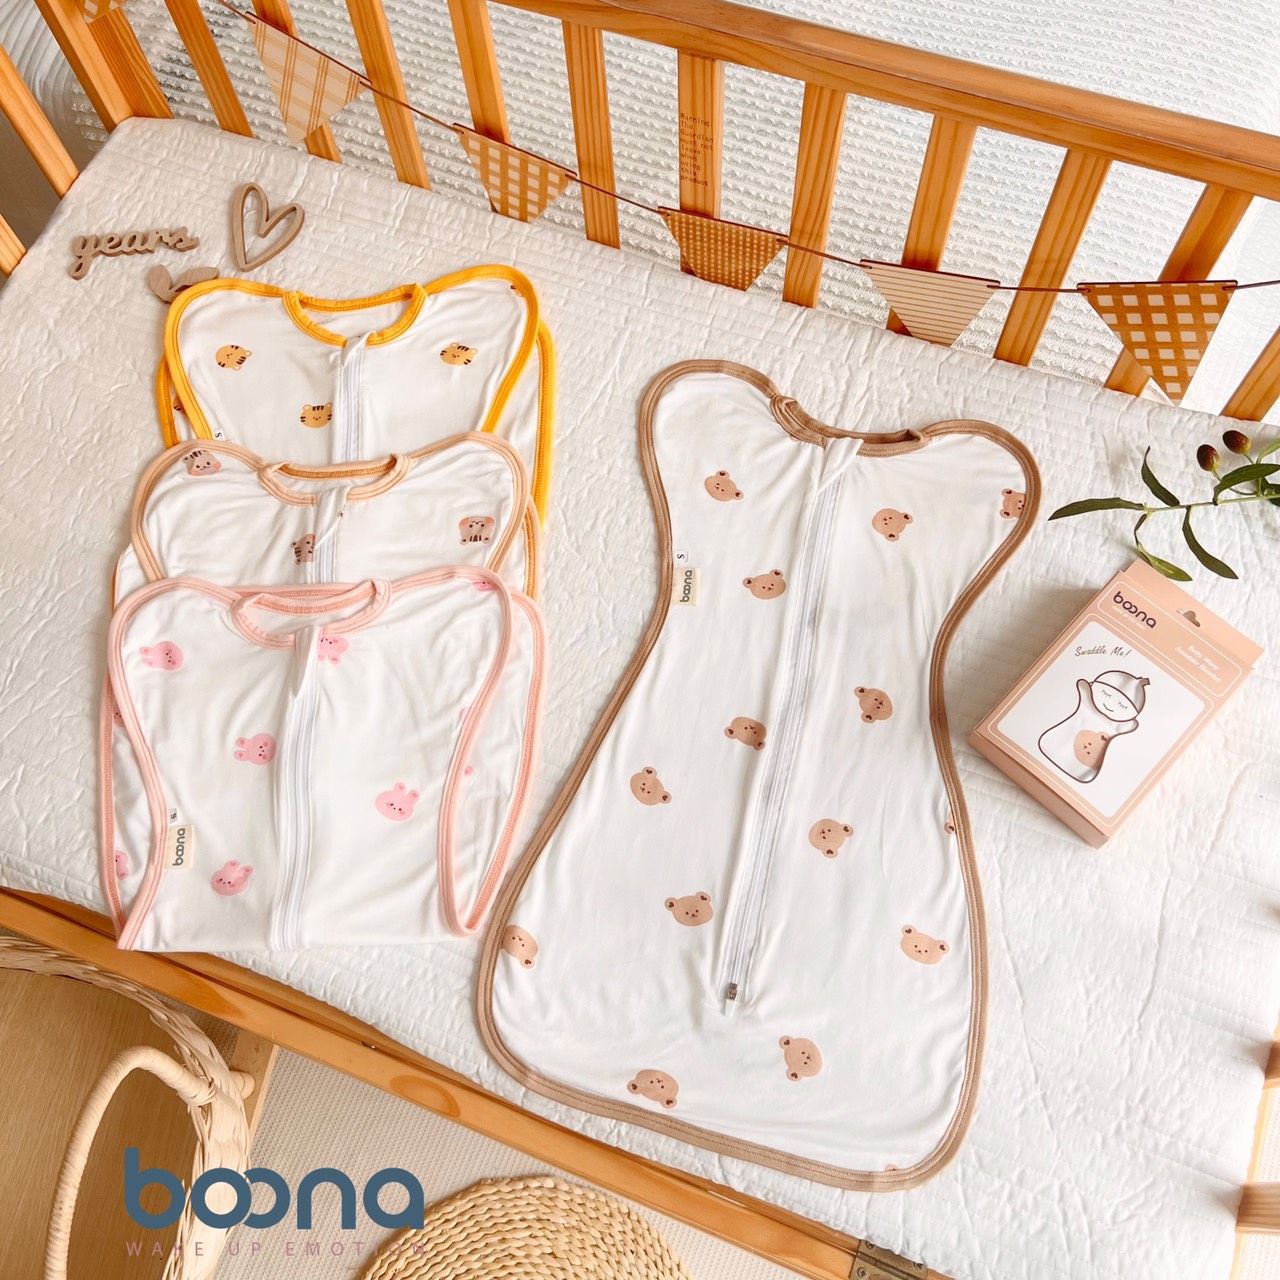 CHÍNH HÃNG Nhộng chũn kéo khóa chất cotton họa tiết đáng yêu cho bé Boona